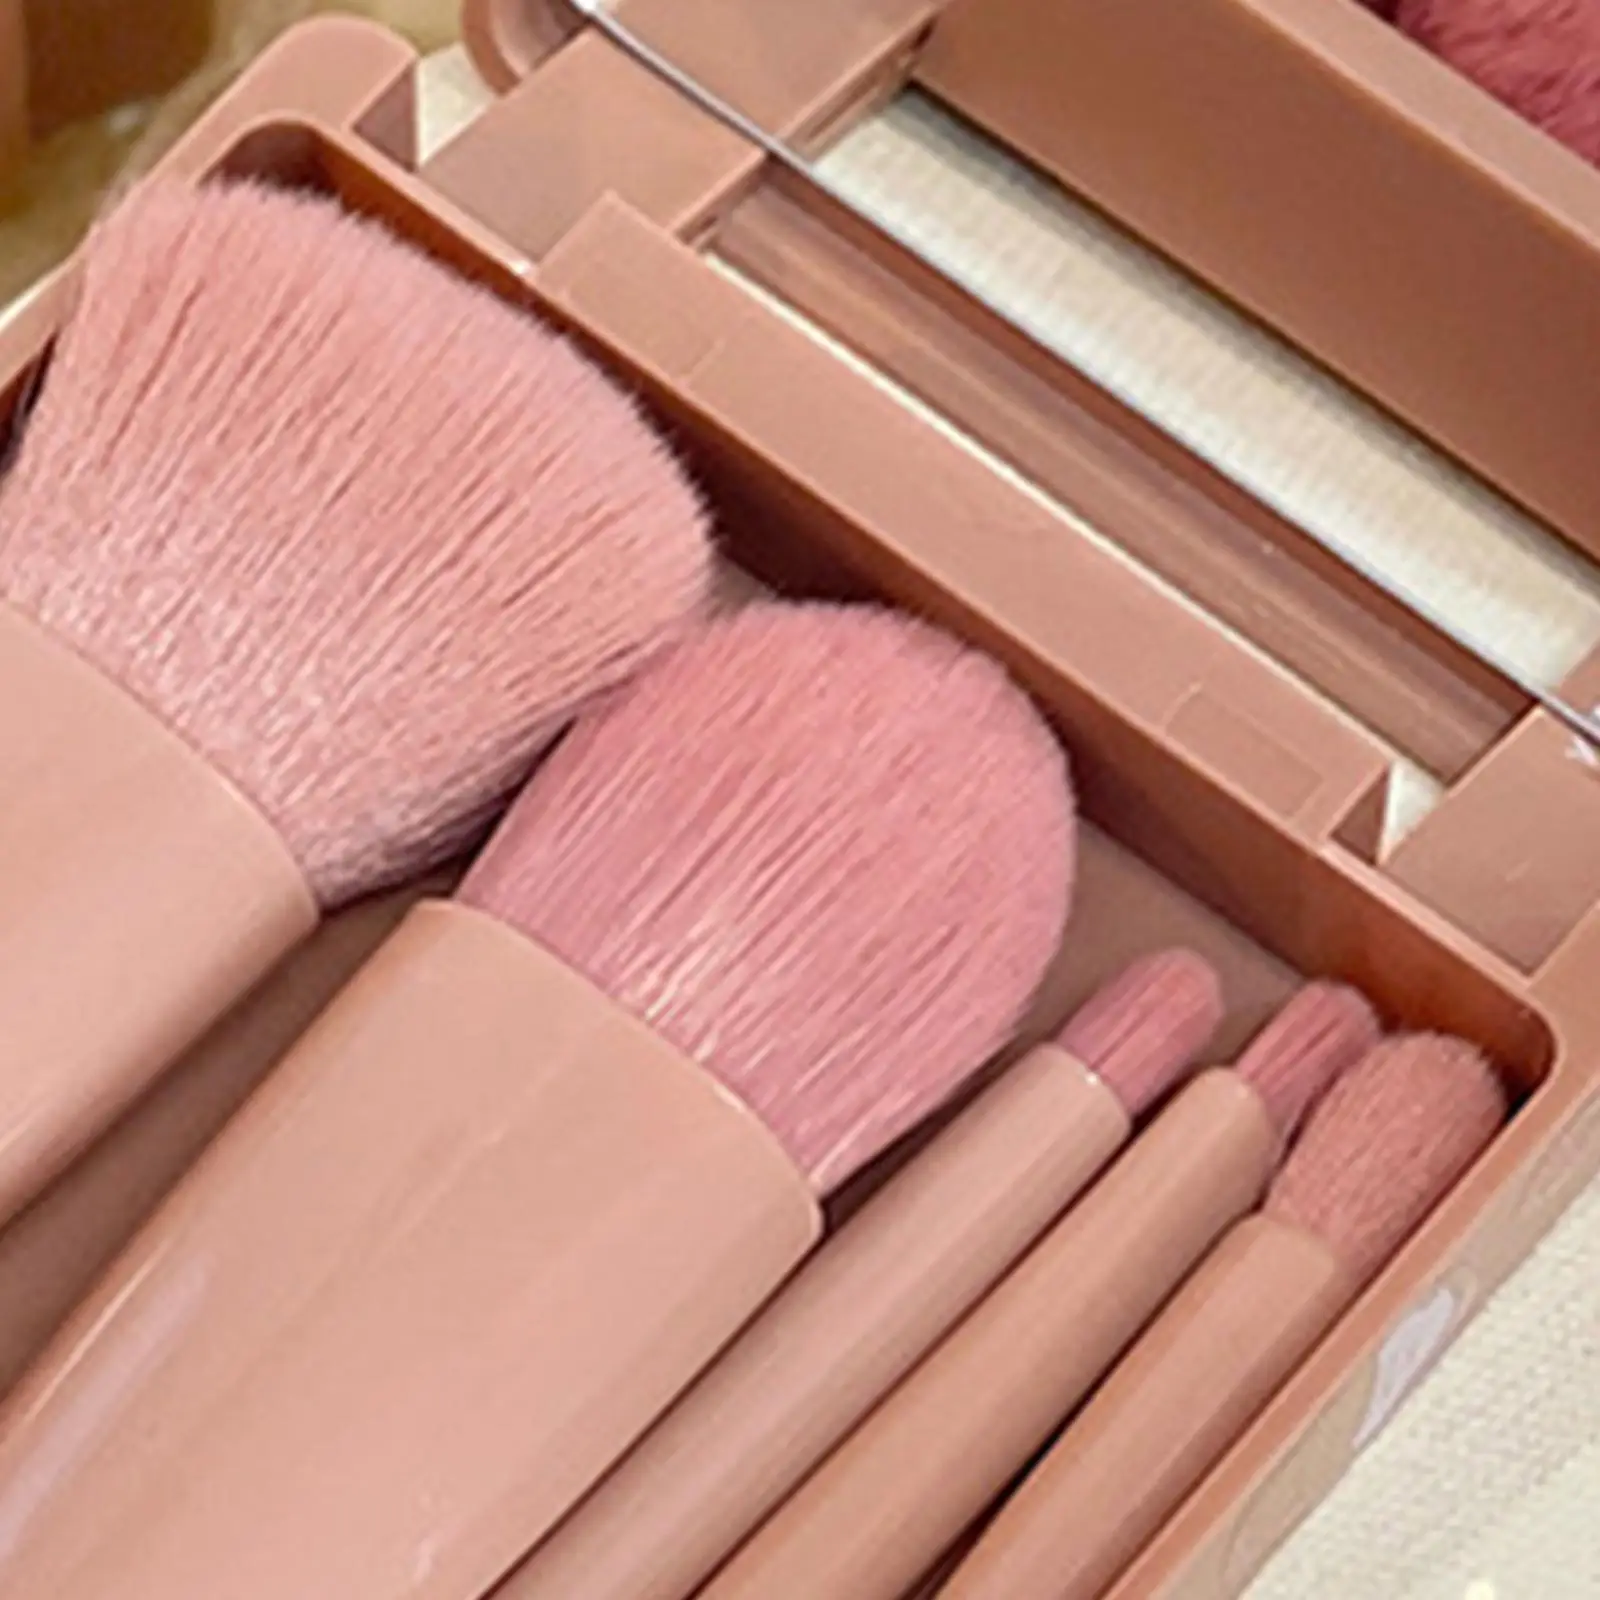 Makeup Brushes Set ,with Case, Blush Powder Concealer Fashion Eyeshadow Eye Shadows Highlight Pink Brushes ,Girls Women